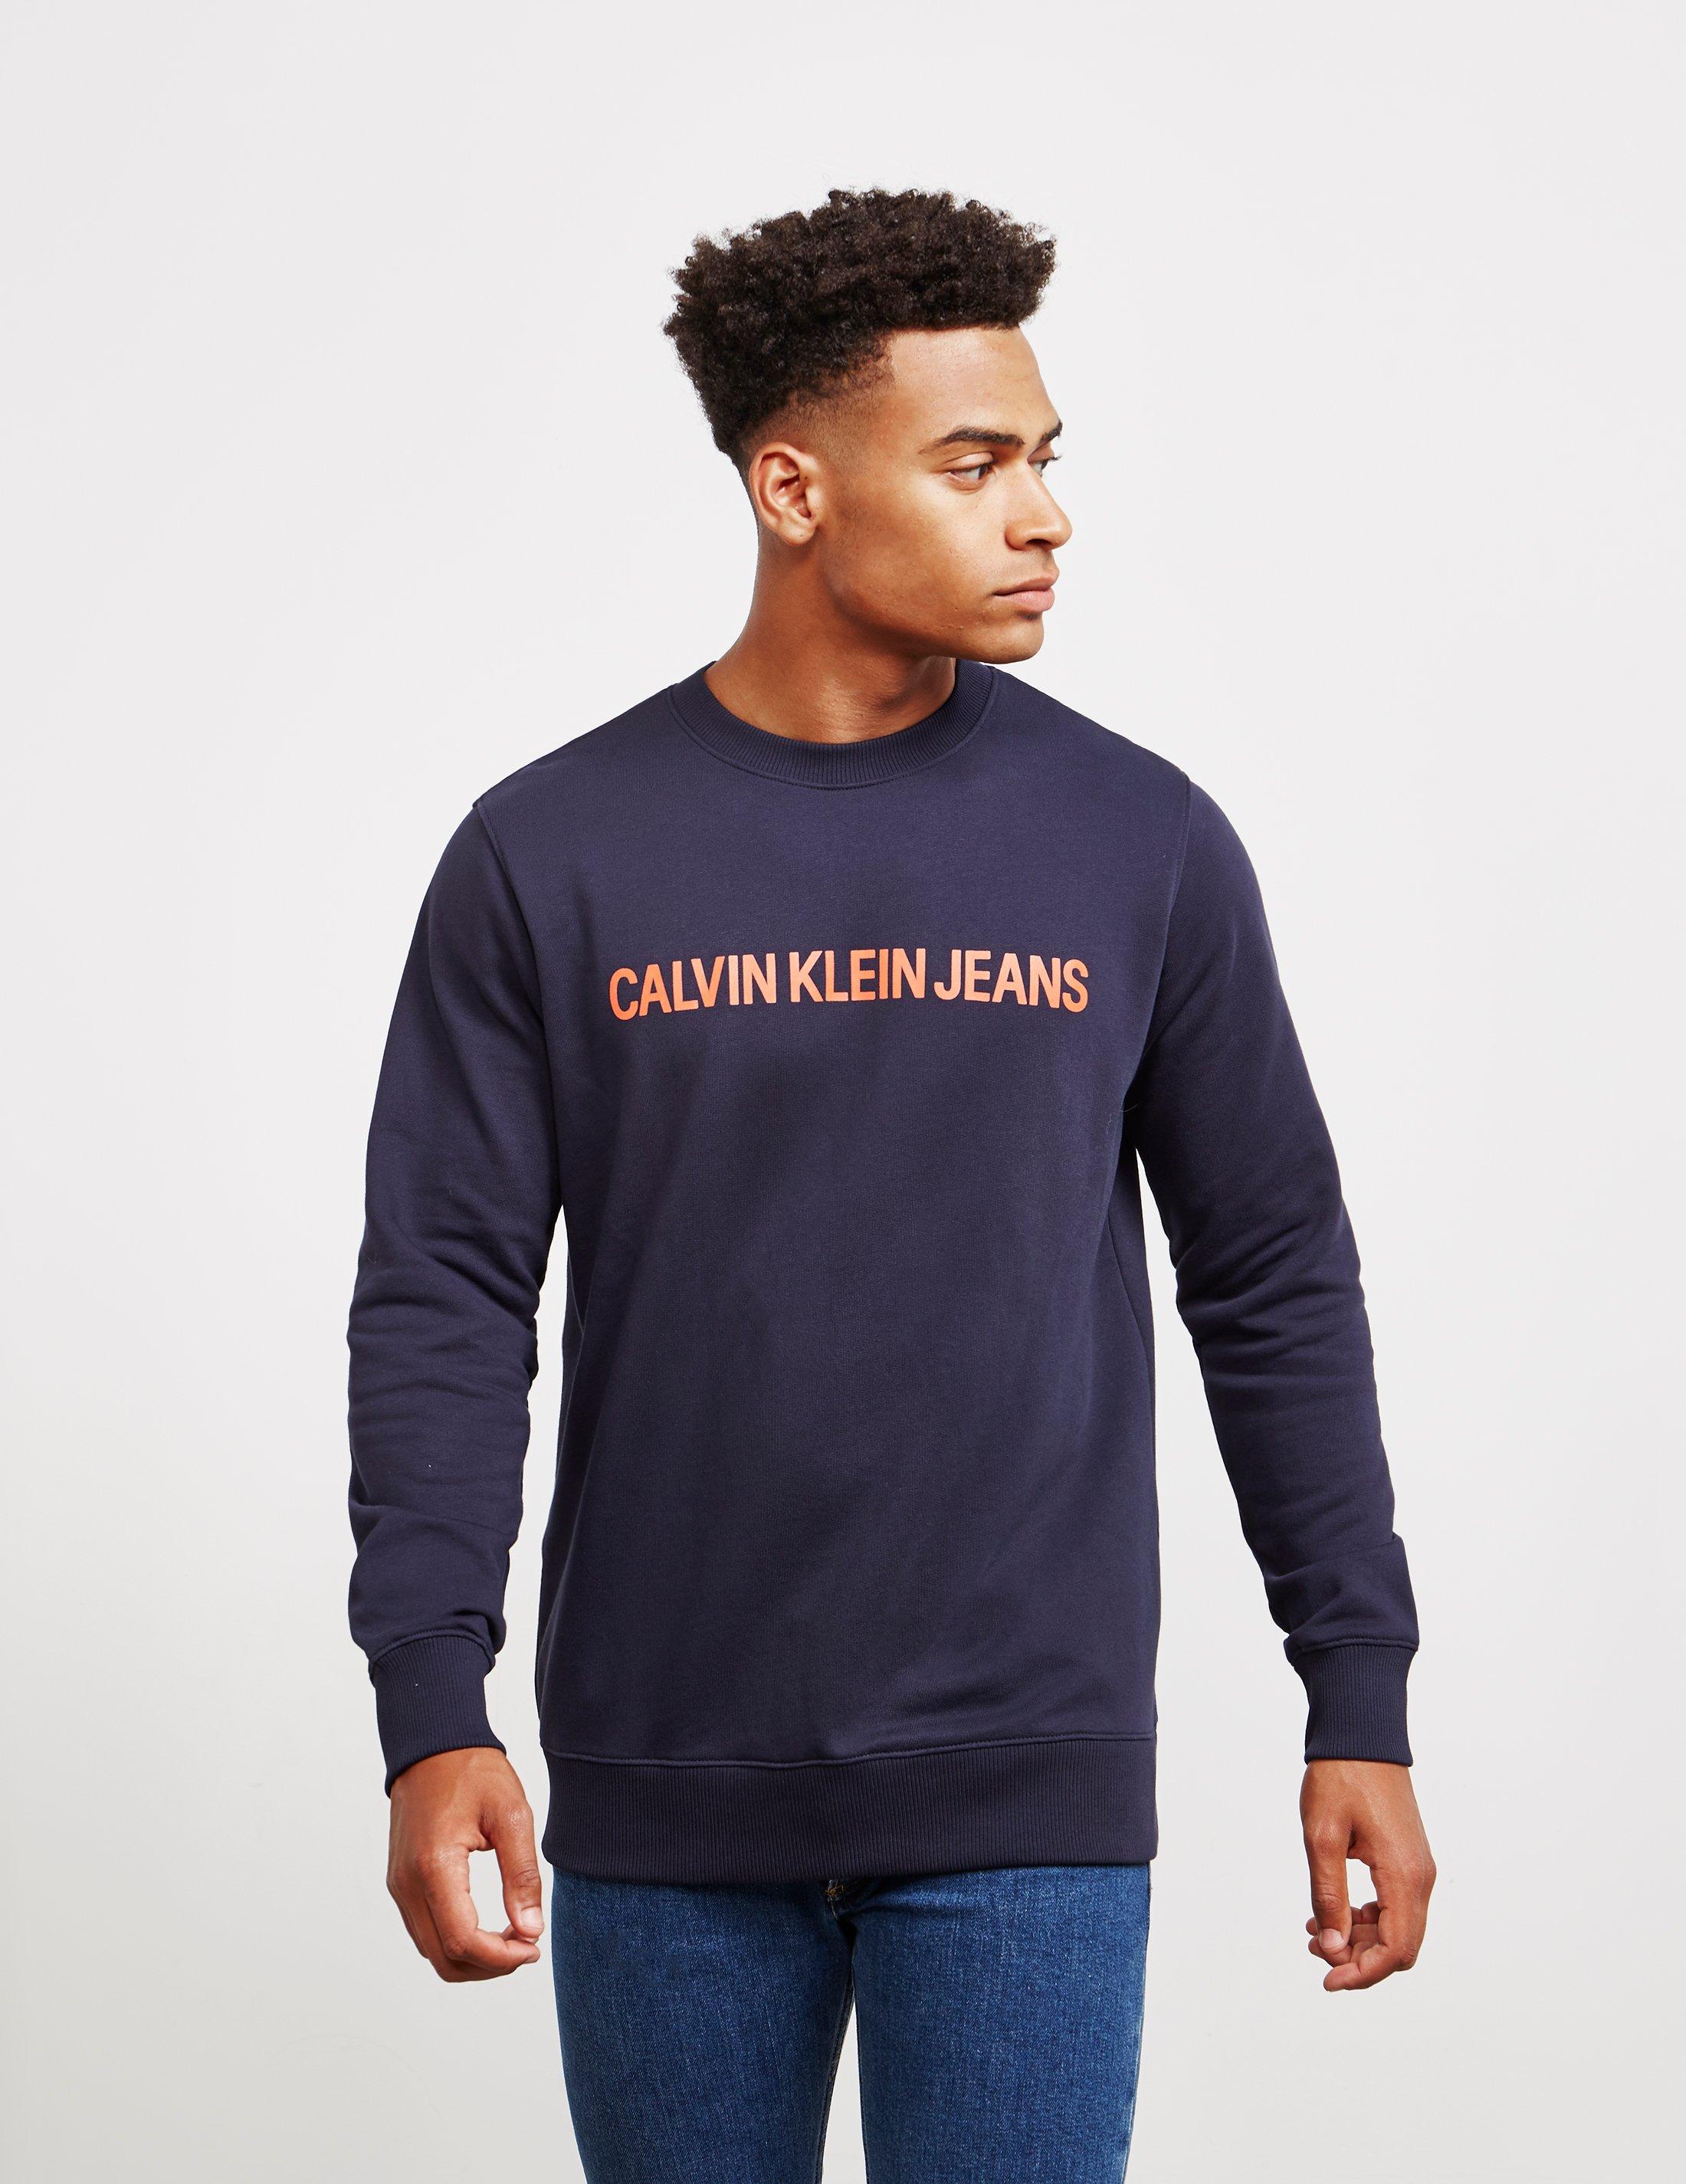 Lyst - Calvin Klein Mens Institutional Crew Sweatshirt Navy Blue in ...